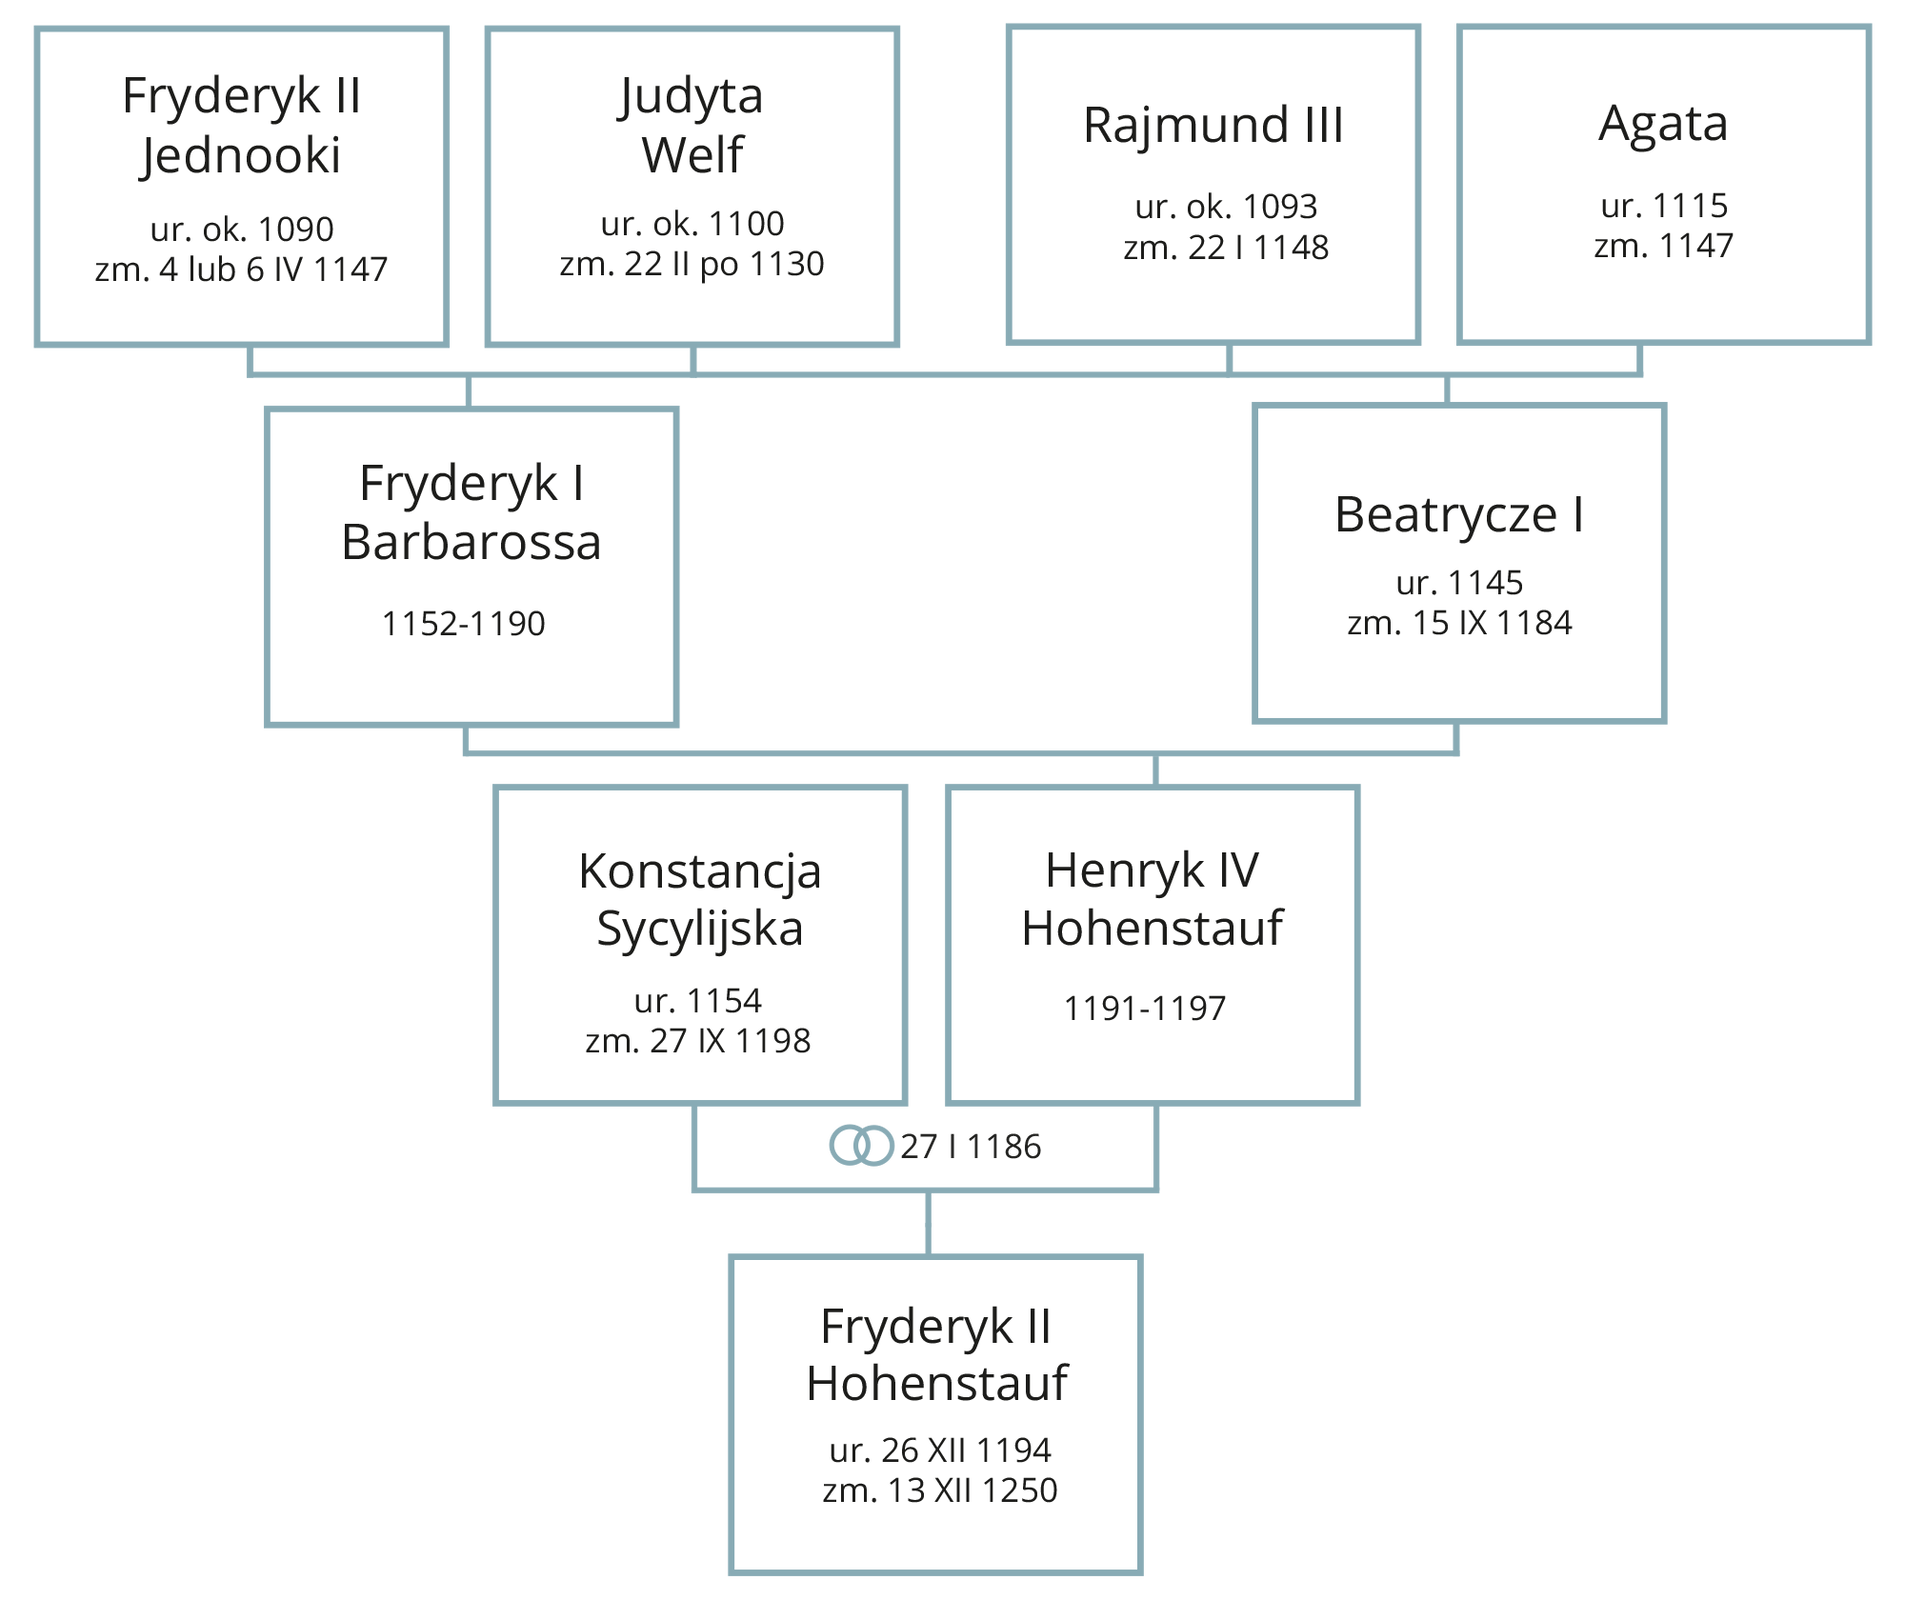 Grafika przedstawia drzewo genealogiczne. Fryderyk Drugi Jednooki (urodzony około 1090 roku, zmarły 4 lub 6 kwietnia 1147 roku) ożenił się z Judytą Welf (urodzoną około 1100 roku, zmarłą 22 lutego po 1130 roku). Byli oni rodzicami Fryderyka Pierwszego Barbarossy (lata panowania 1152‑1190). Rajmund Trzeci (urodzony około 1093 roku, zmarły 22 stycznia 1148 roku) ożenił się z Agatą (lata życia 1115‑1147). Ich córką była Beatrycze Pierwsza (lata życia 1145 – 15 września 1184). Fryderyk Pierwszy Barbarossa ożenił się z Beatrycze Pierwszą. Ich synem był Henryk Czwarty Hohenstauf (lata panowania 1191‑1197). Ożenił się on z Konstancją Sycylijską (urodzoną w 1154 roku, zmarłą 27 września 1198 roku) w dniu 27 stycznia 1186 roku. Ich synem był Fryderyk Drugi Hohenstauf (urodzony 26 grudnia 1194, zmarły 13 grudnia 1250 roku).